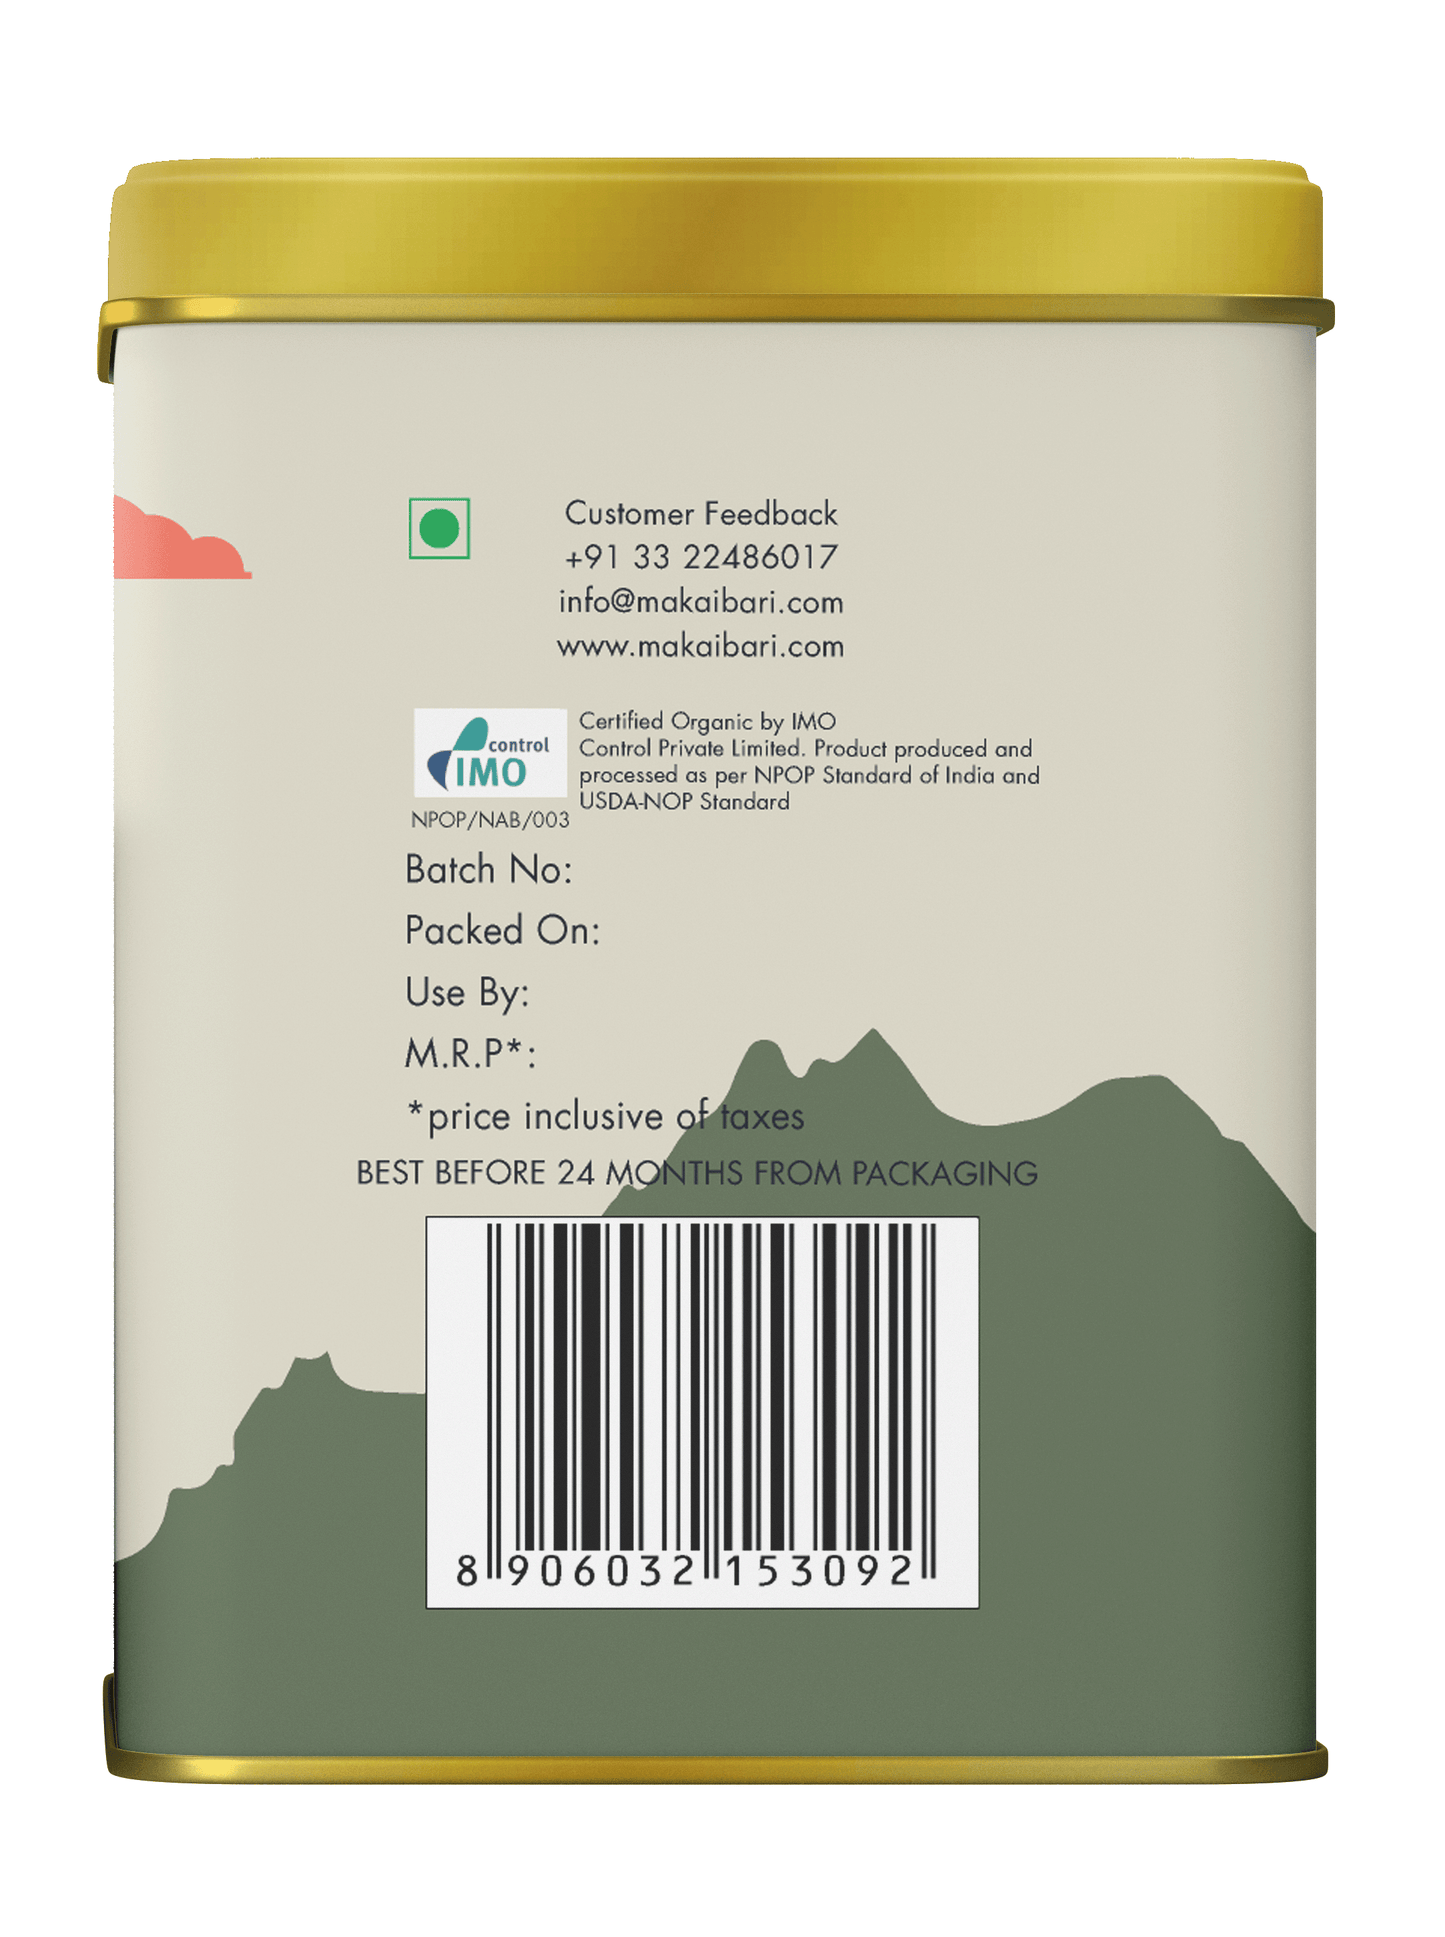 Freedom Edition : Verleni 1947 | Darjeeling Black Tea - MAKAIBARI TEA